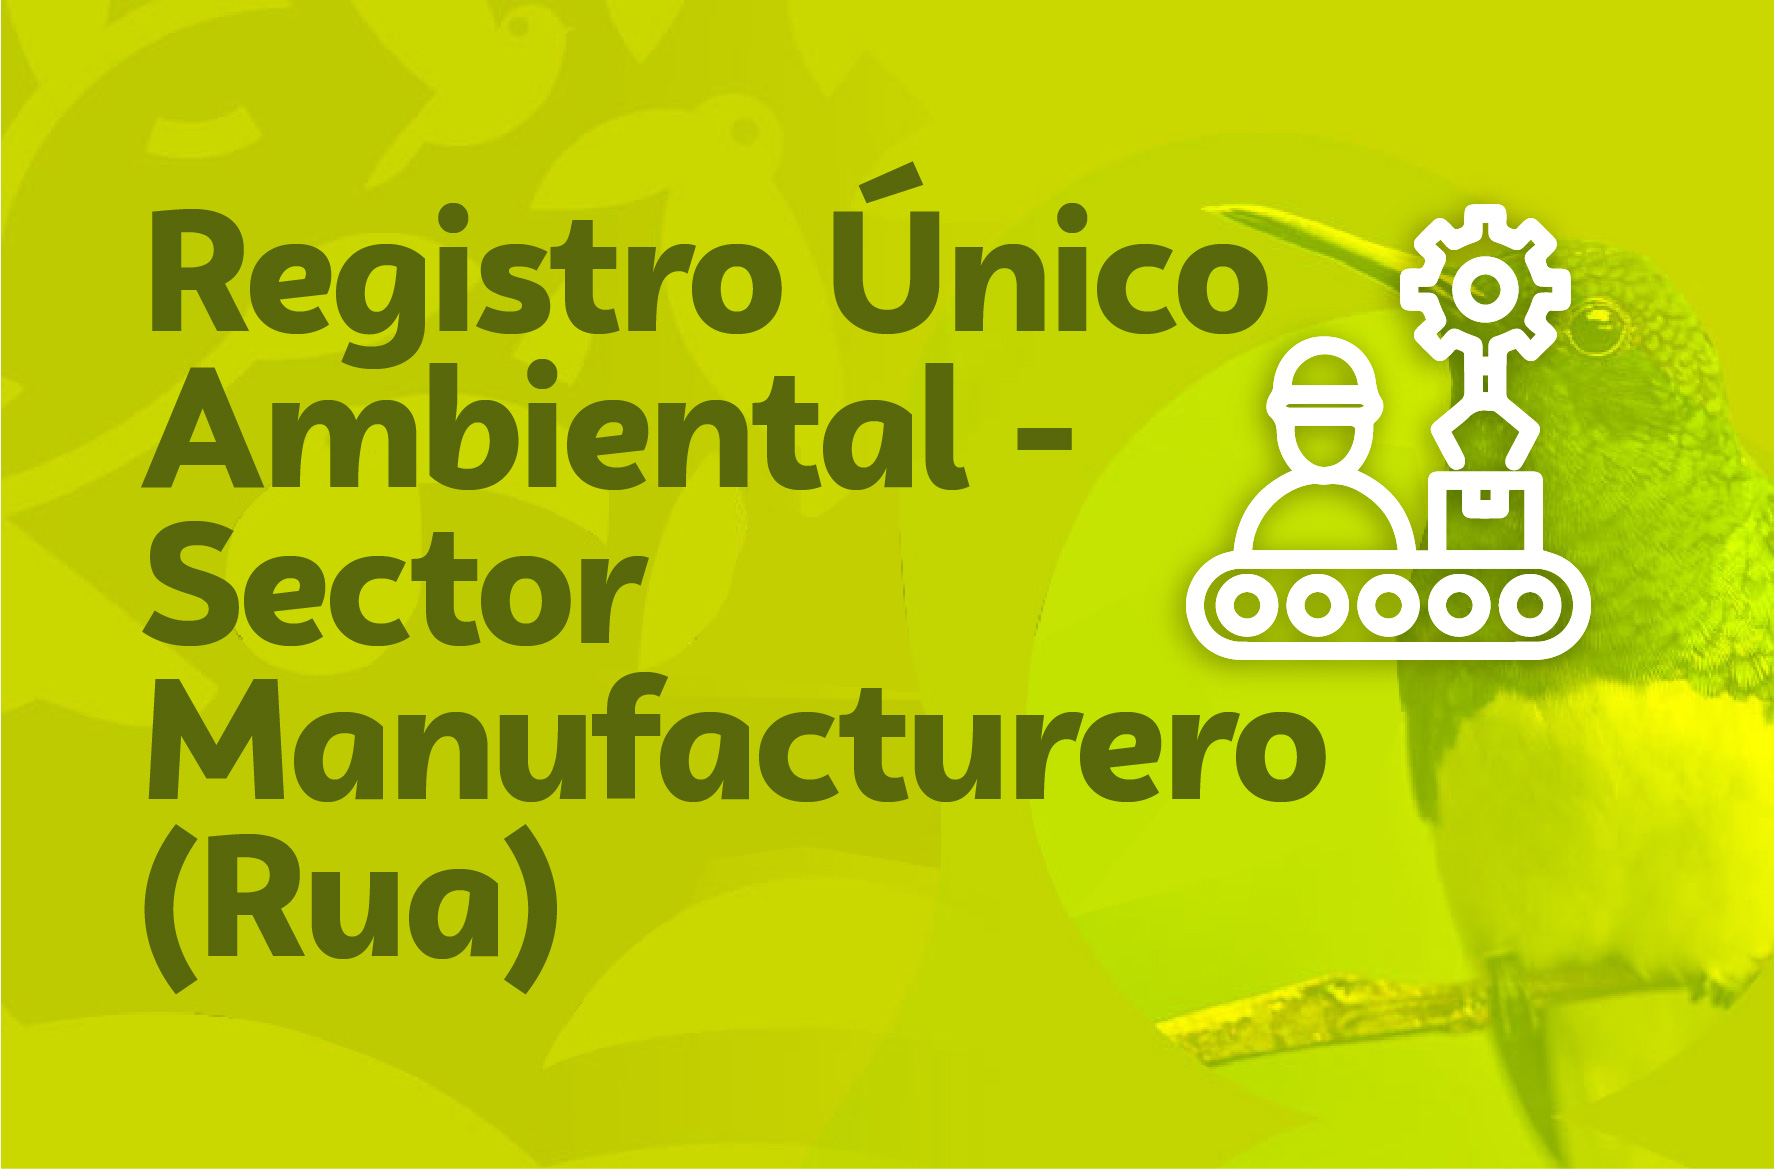 Registro Único Ambiental - Sector Manufacturero (Rua)